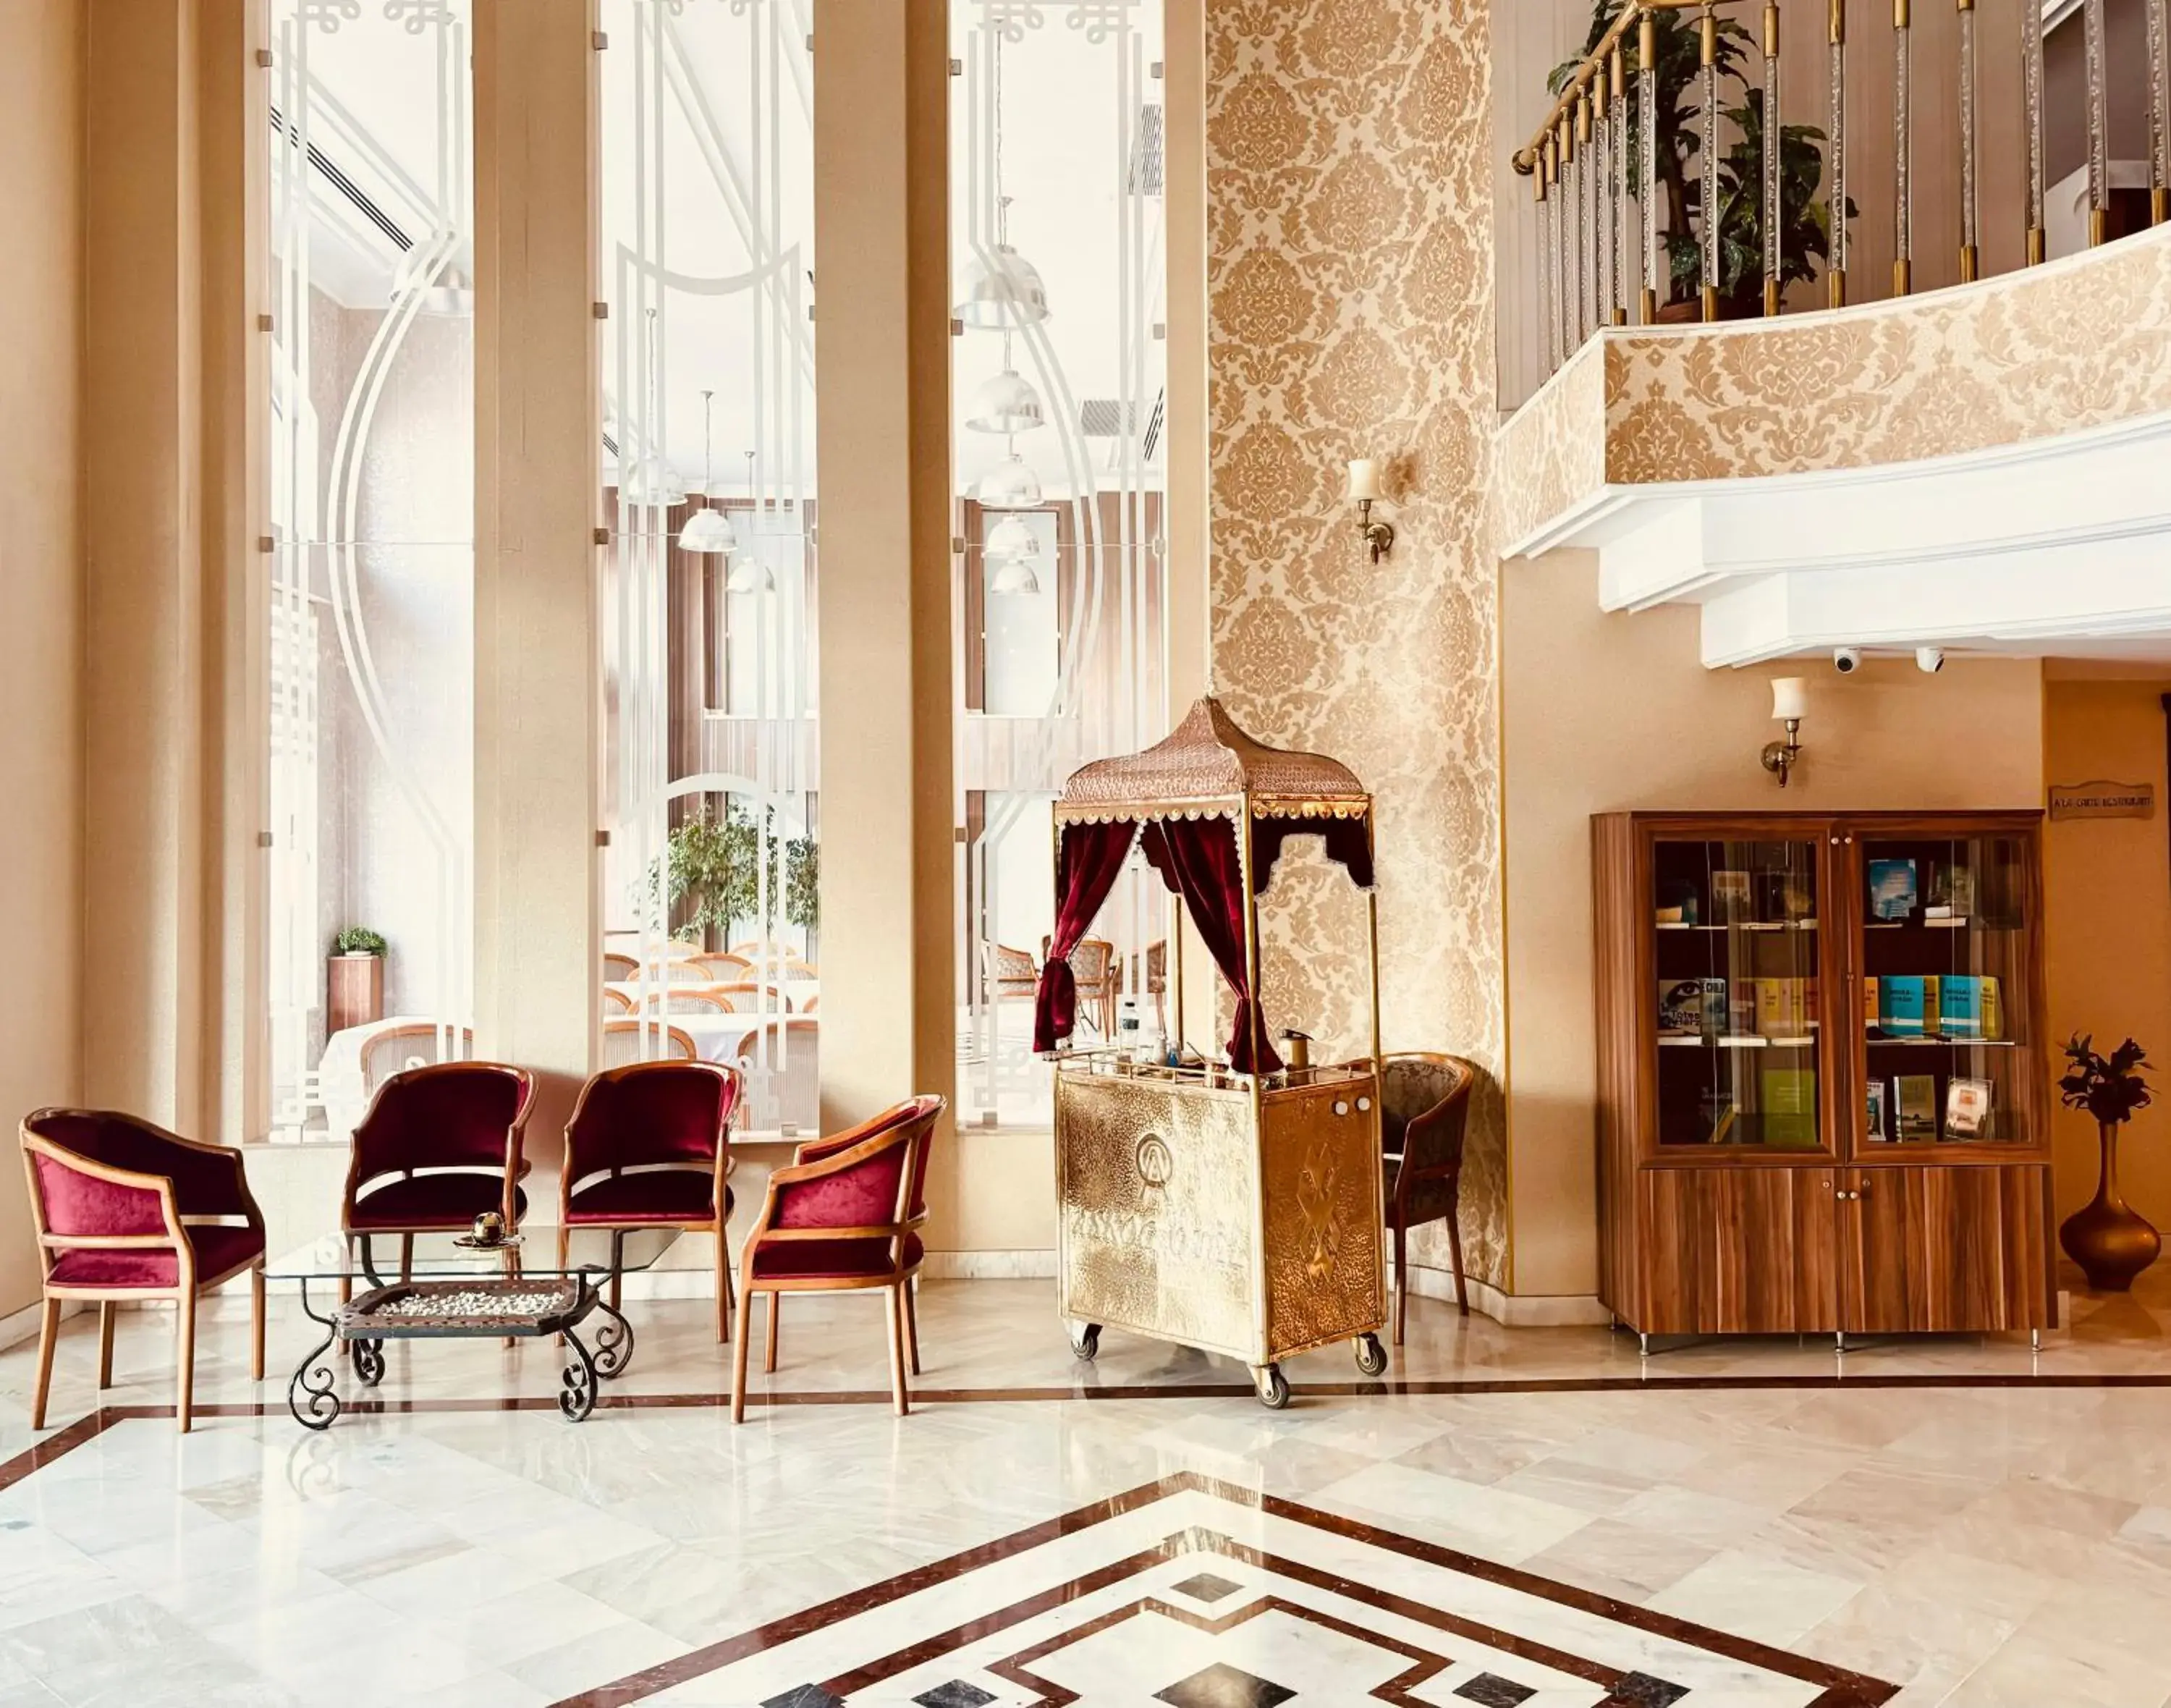 Lobby or reception in Askoc Hotel & SPA